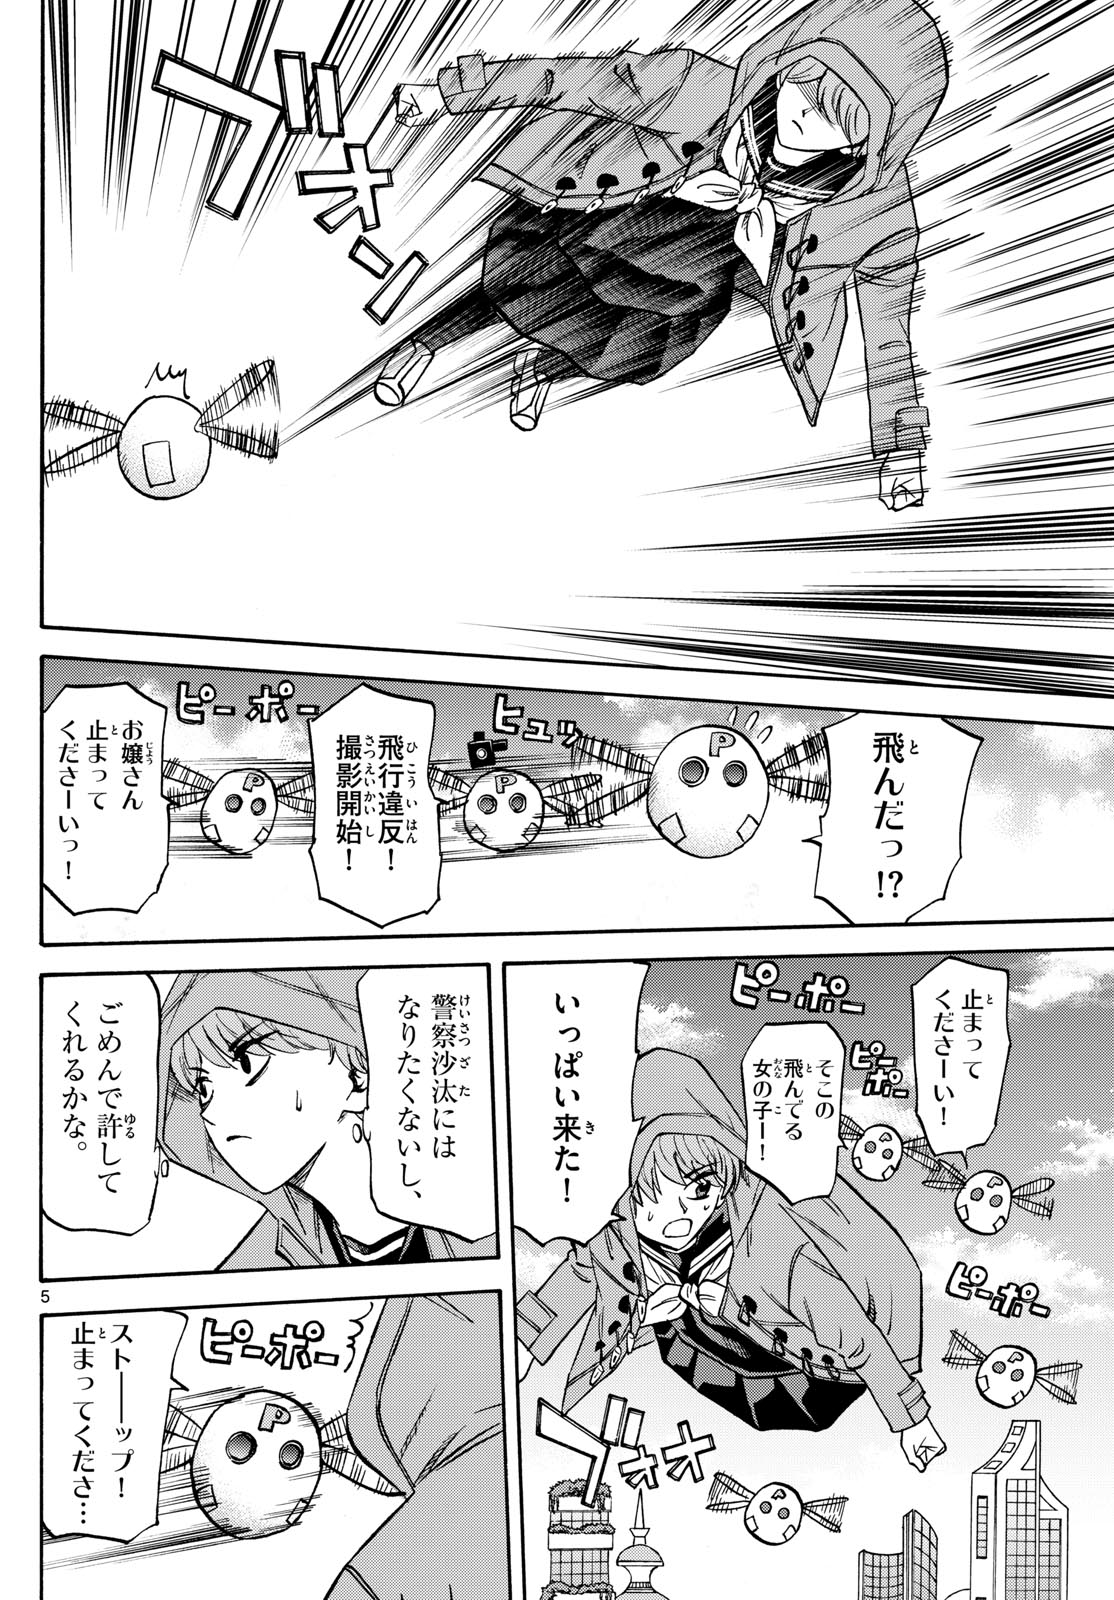 Tatsu to Ichigo - Chapter 182 - Page 5